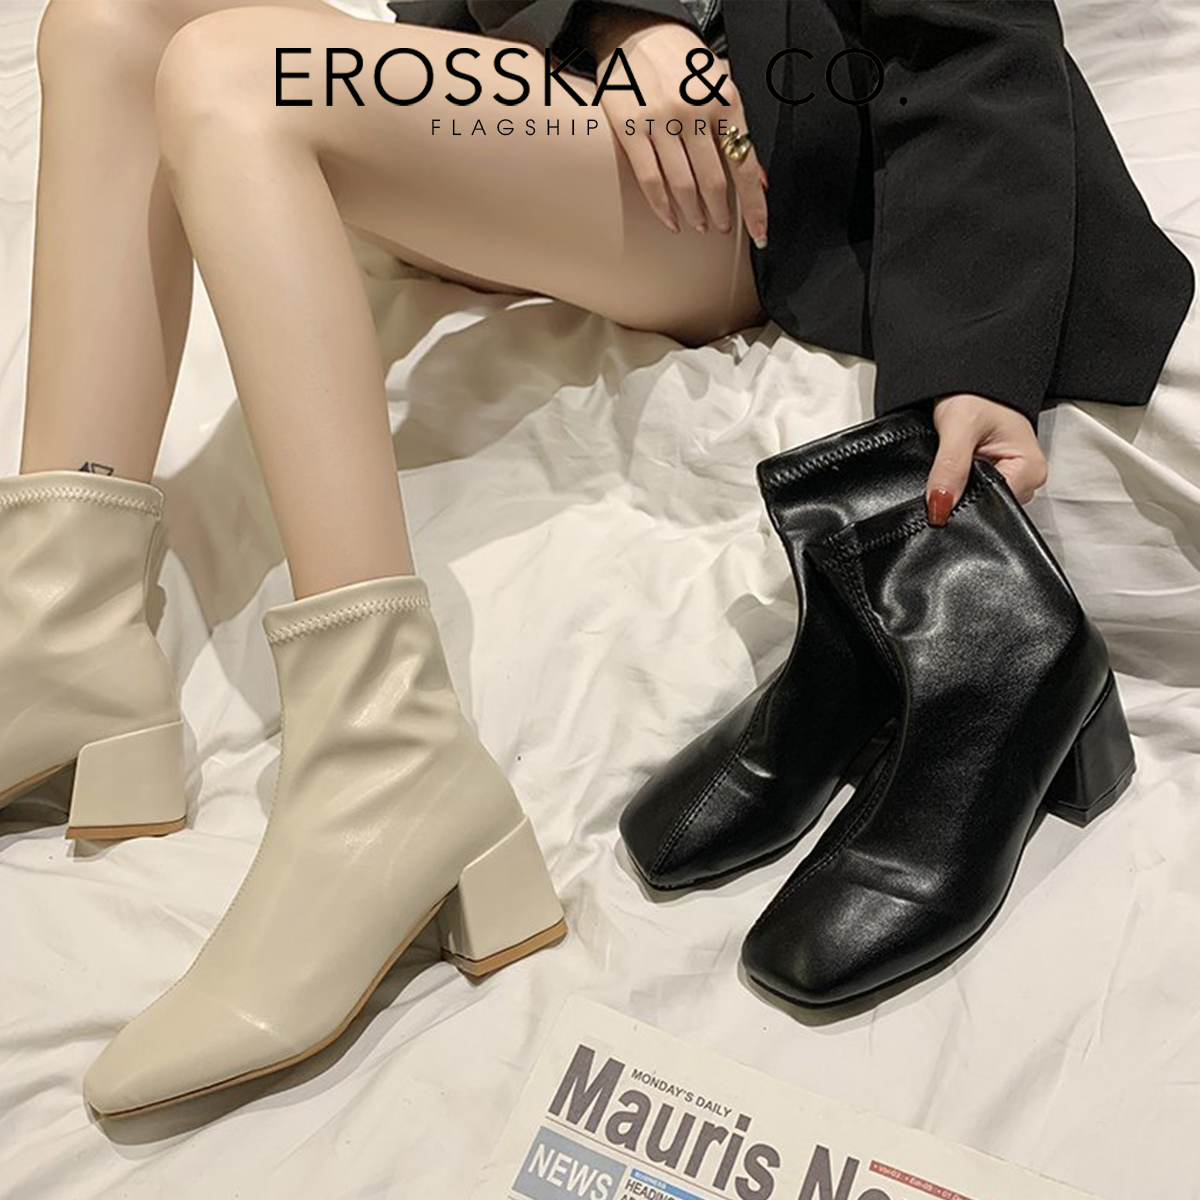 Erosska - Giày boot nữ cao cấp gót vuông có khoá kéo sau - GB010